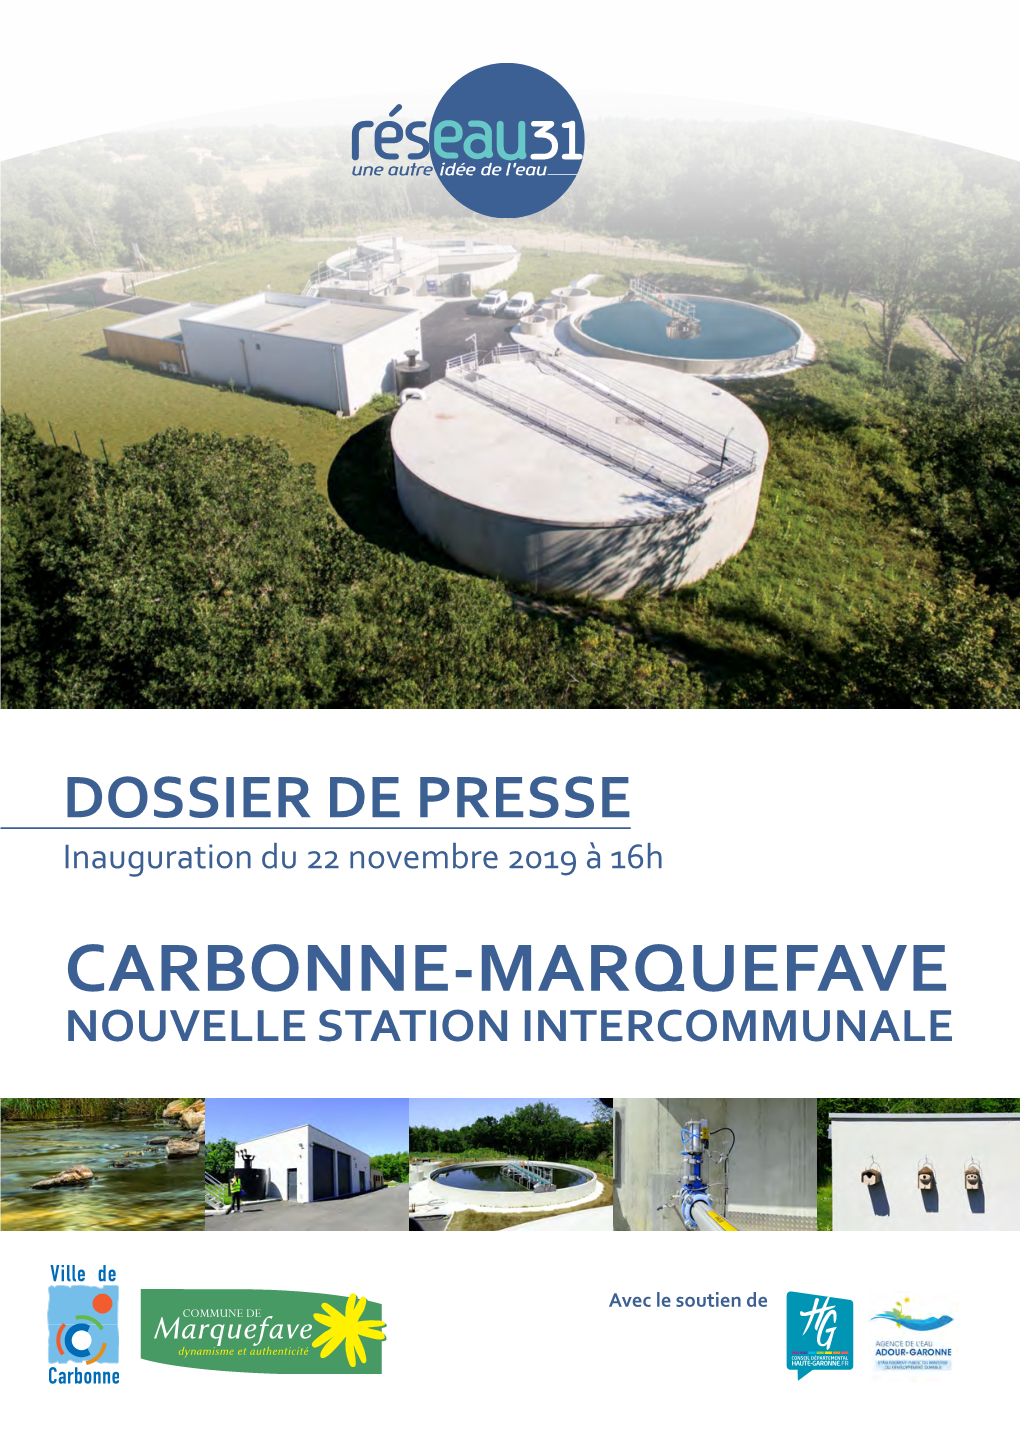 Carbonne-Marquefave Nouvelle Station Intercommunale